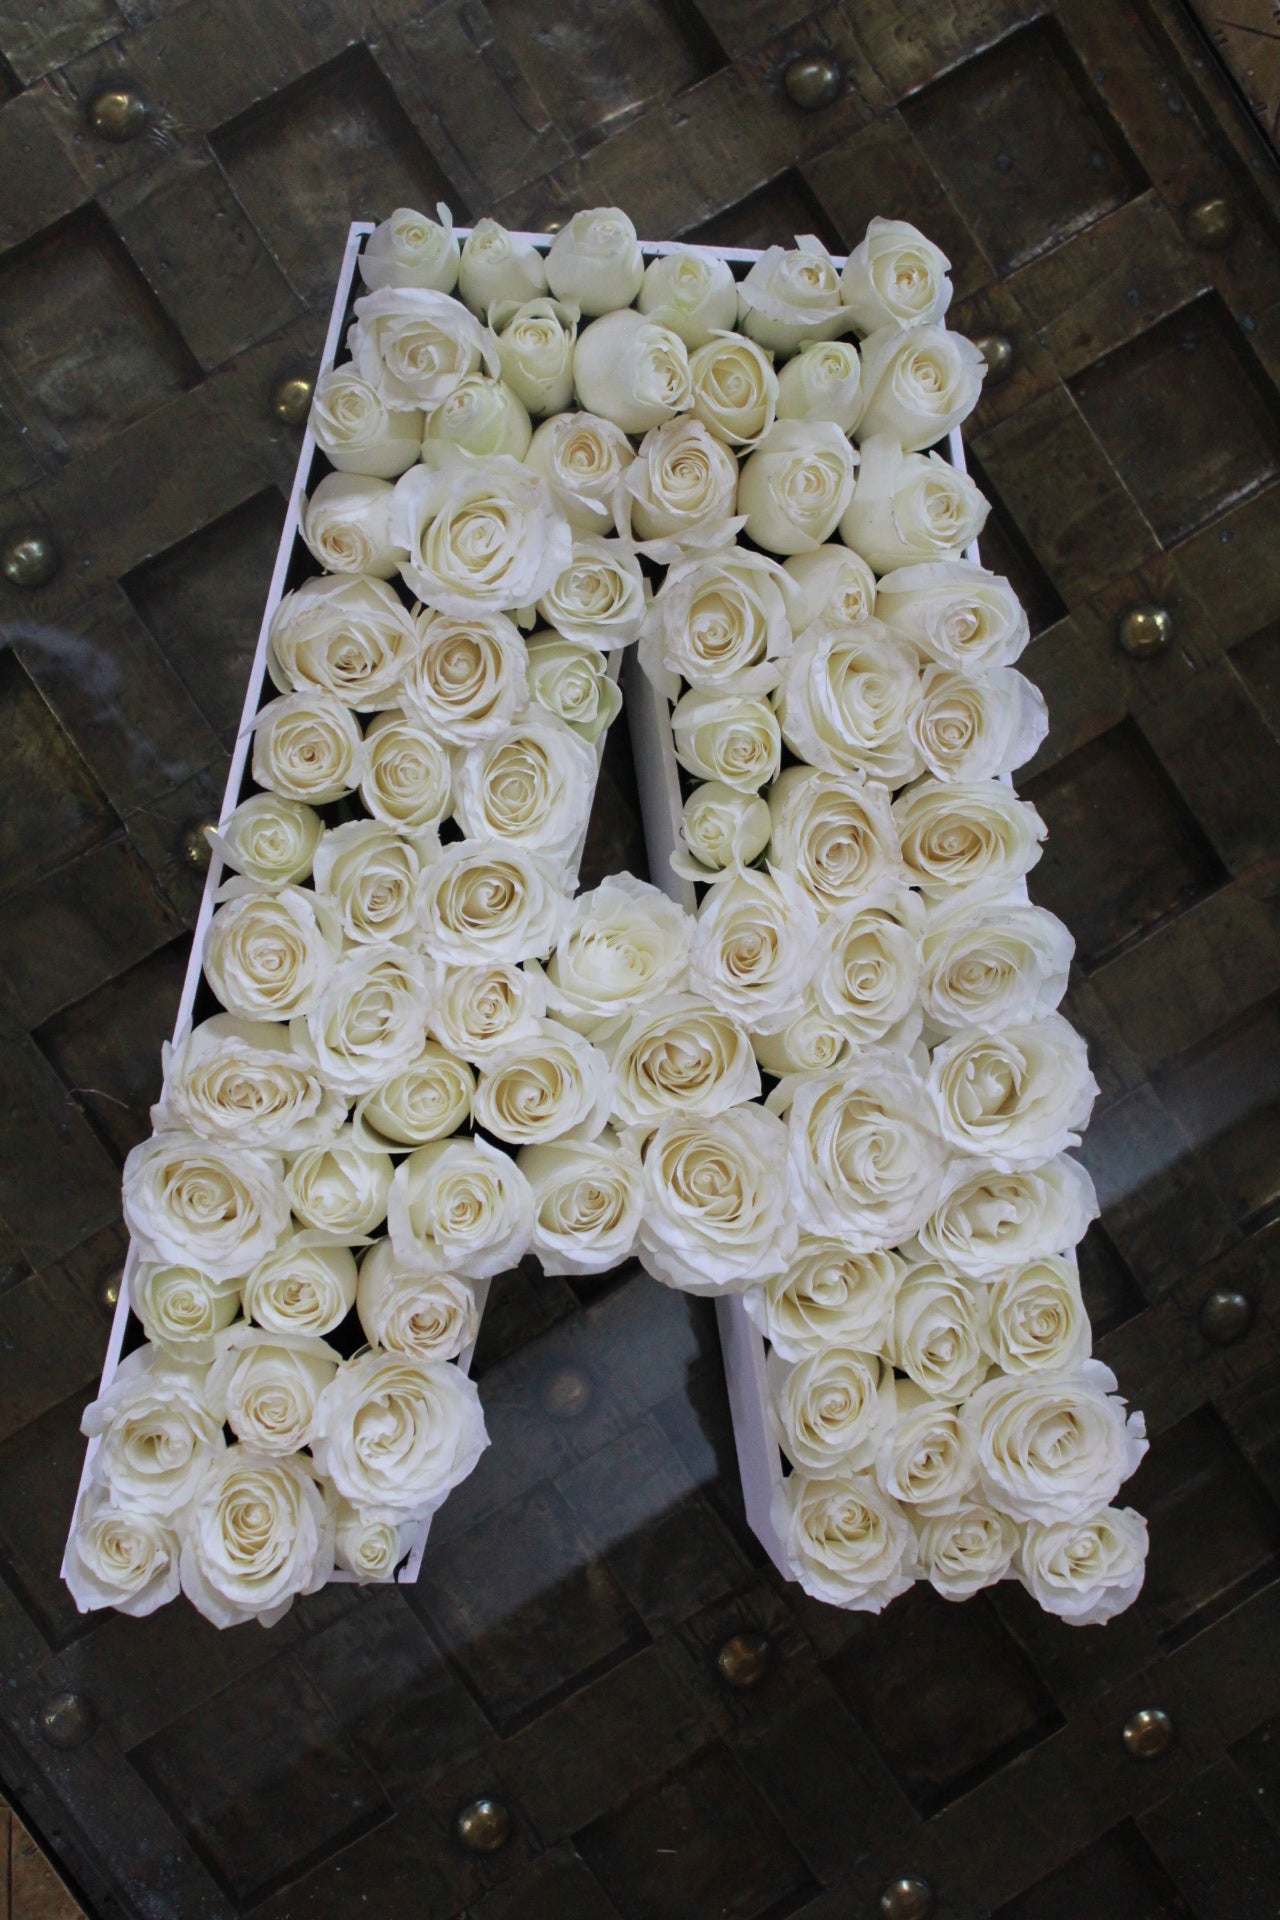 Letras con aproximadamente 100 rosas sobre caja de madera.